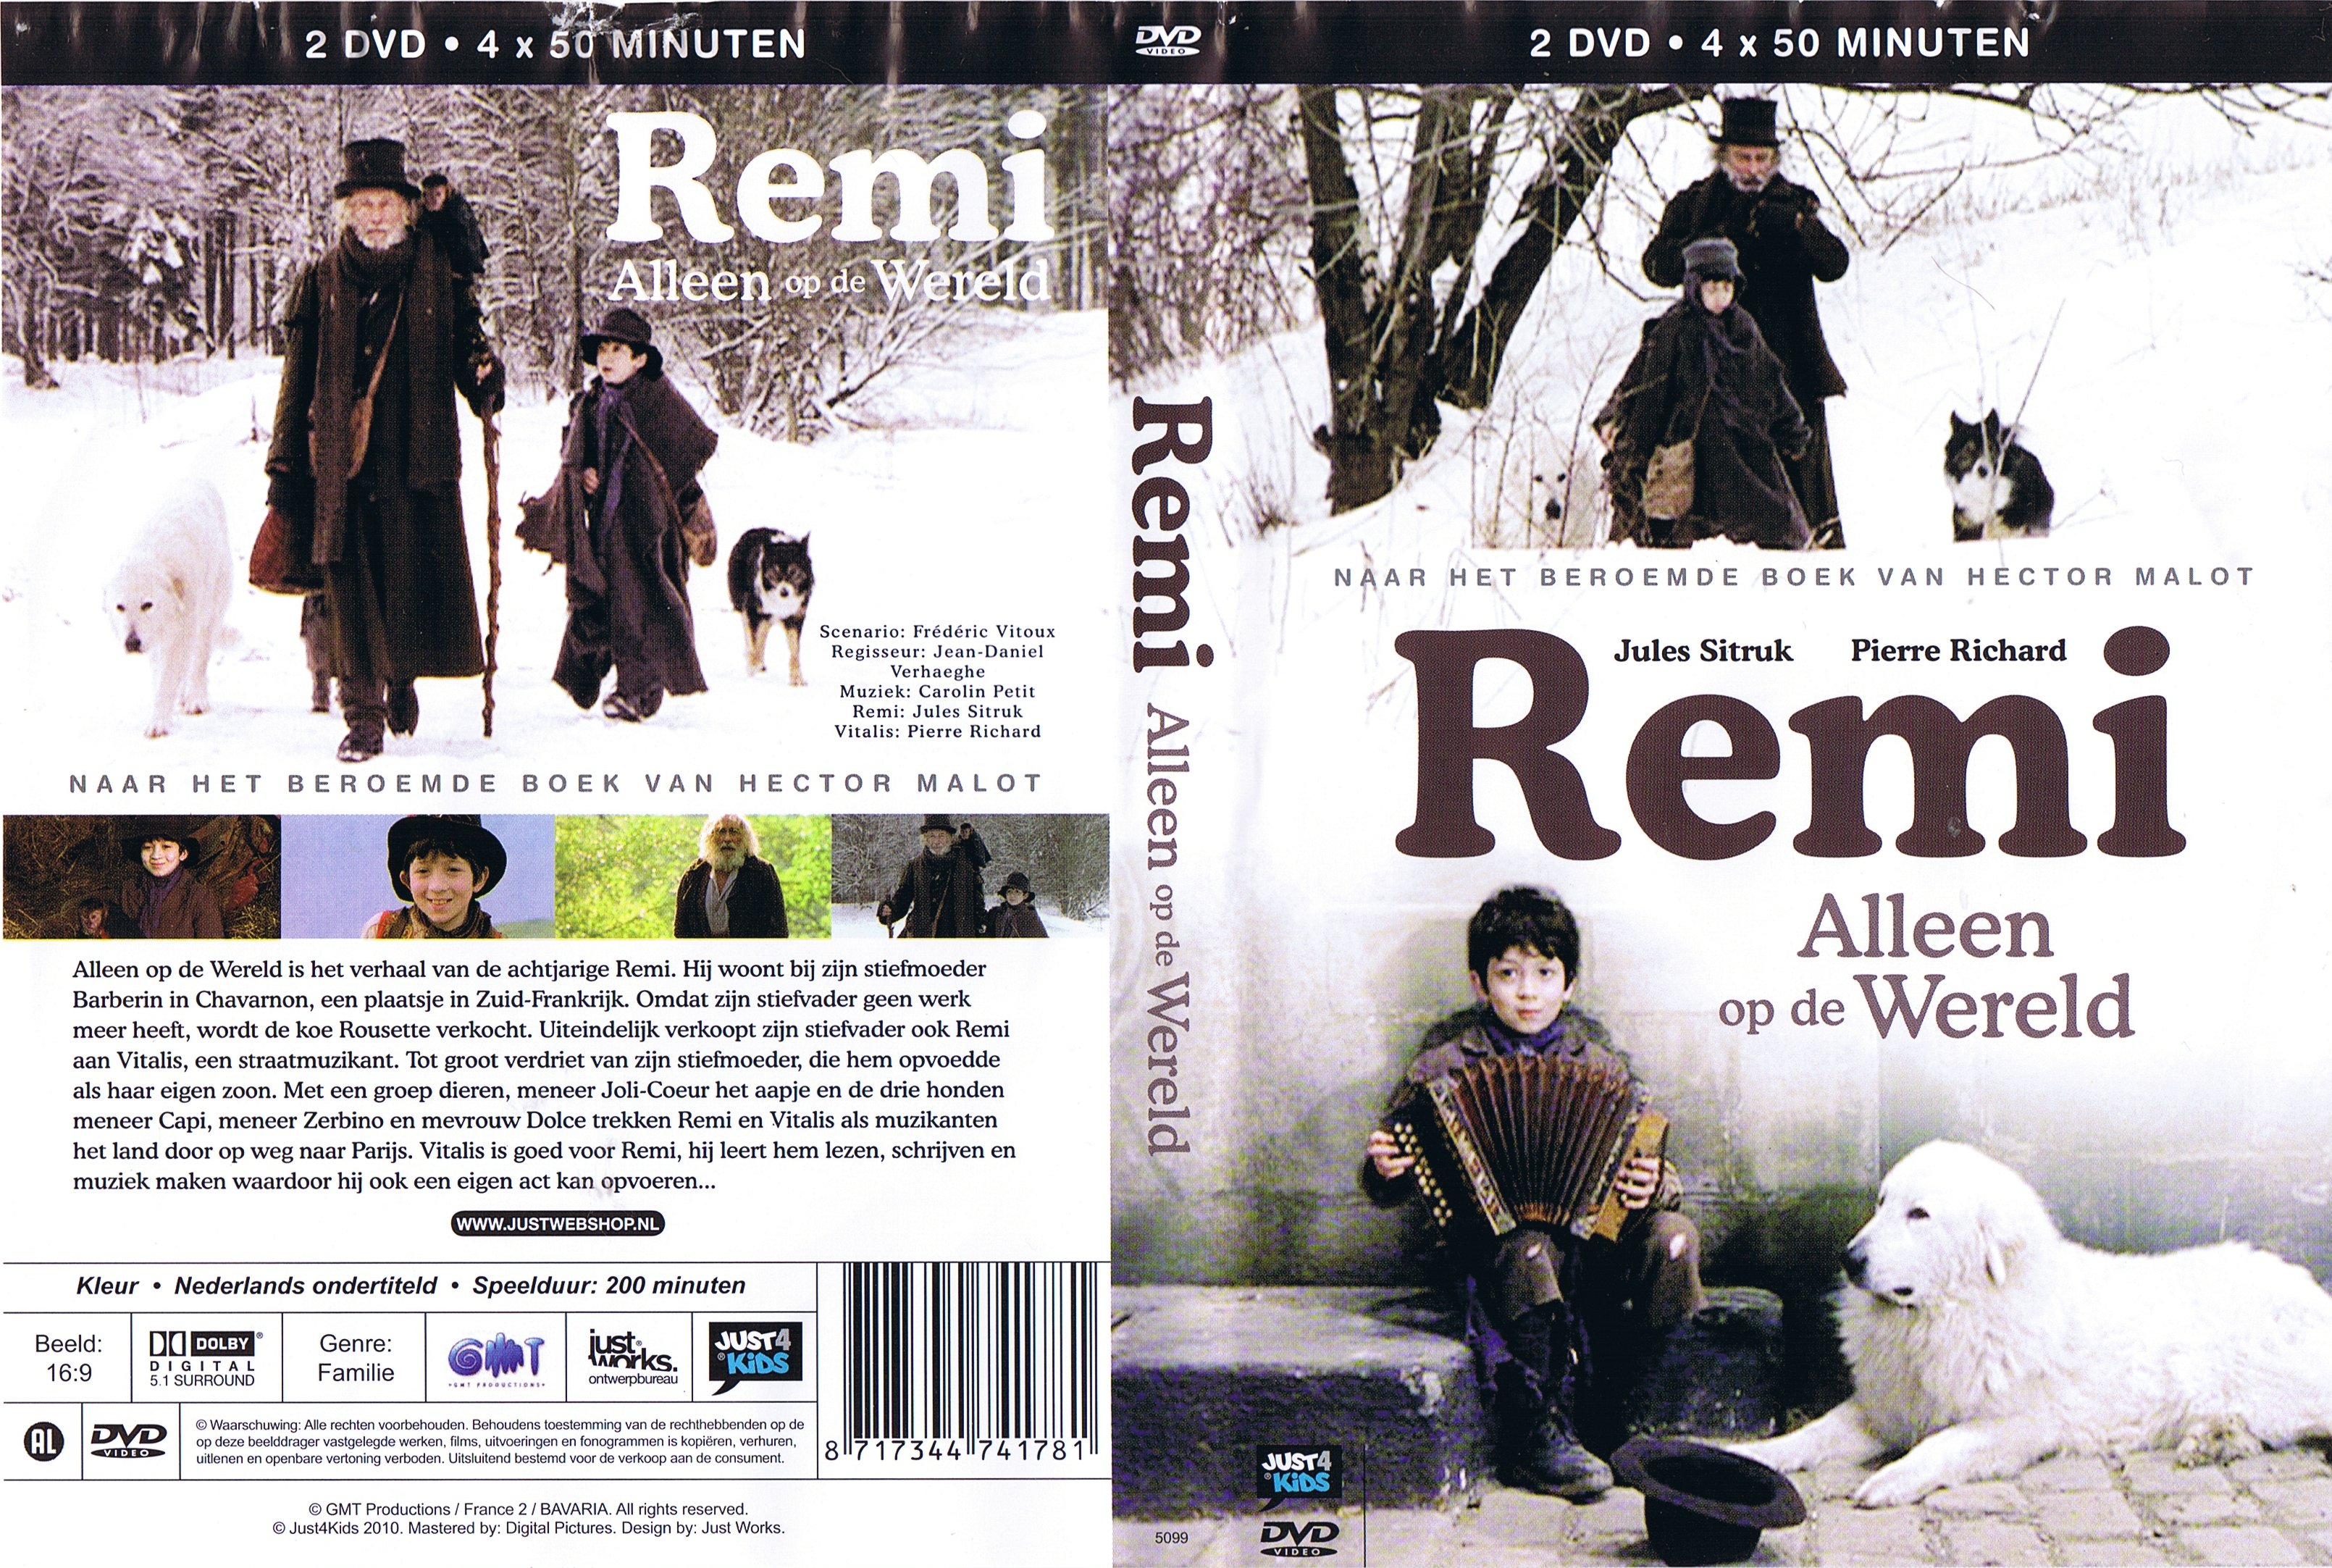 Remi - Alleen op de wereld - DVD 1 (2000)